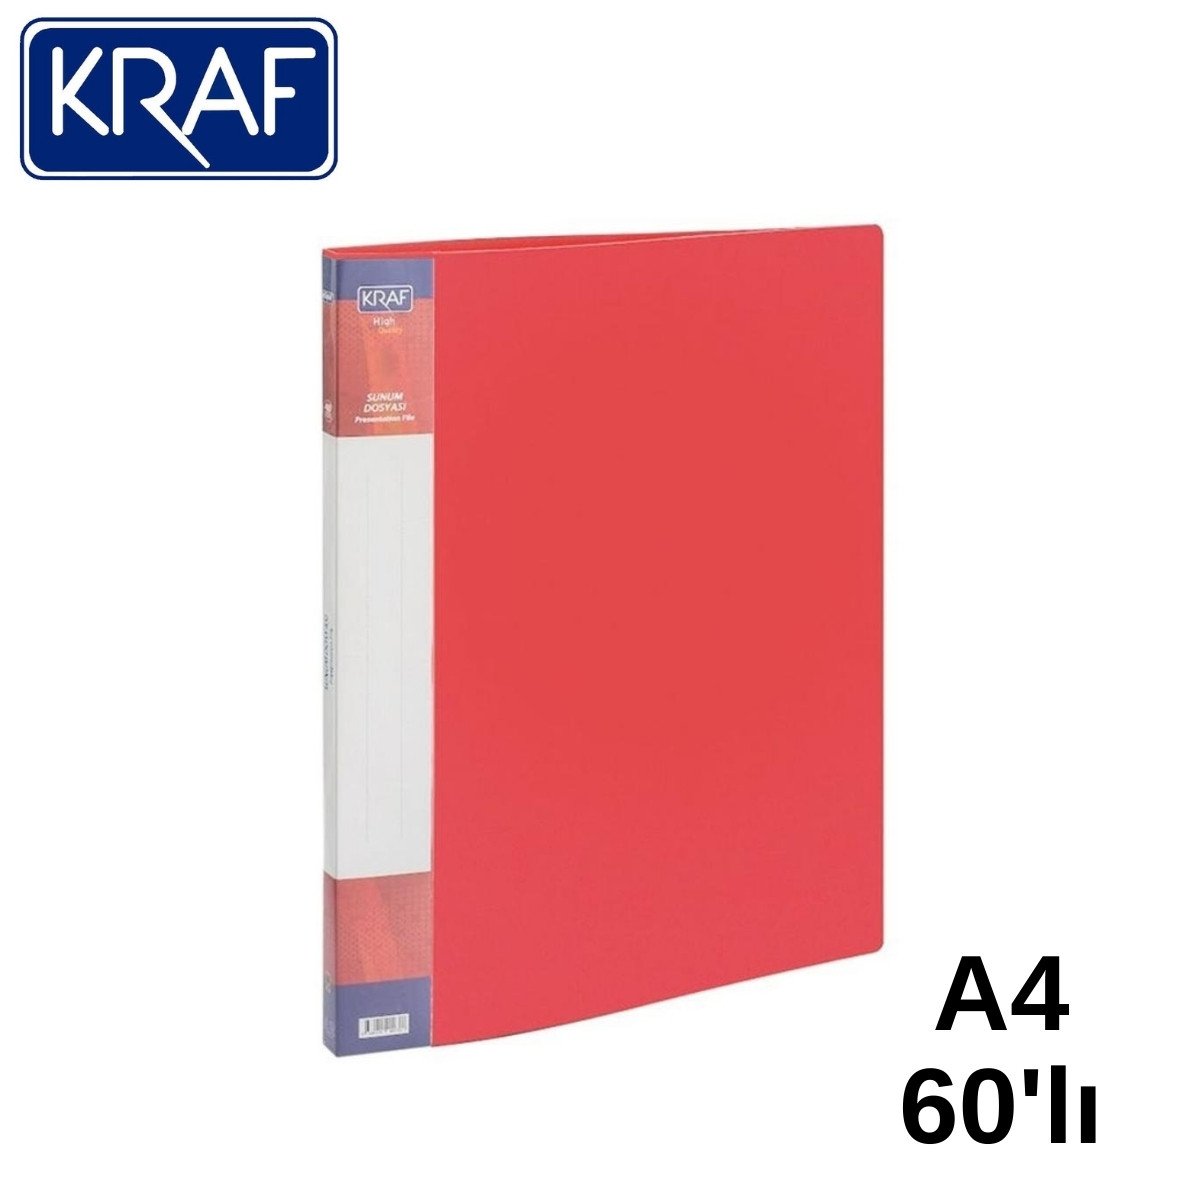 Kraf Sunum Dosyası A4 60lı Kırmızı